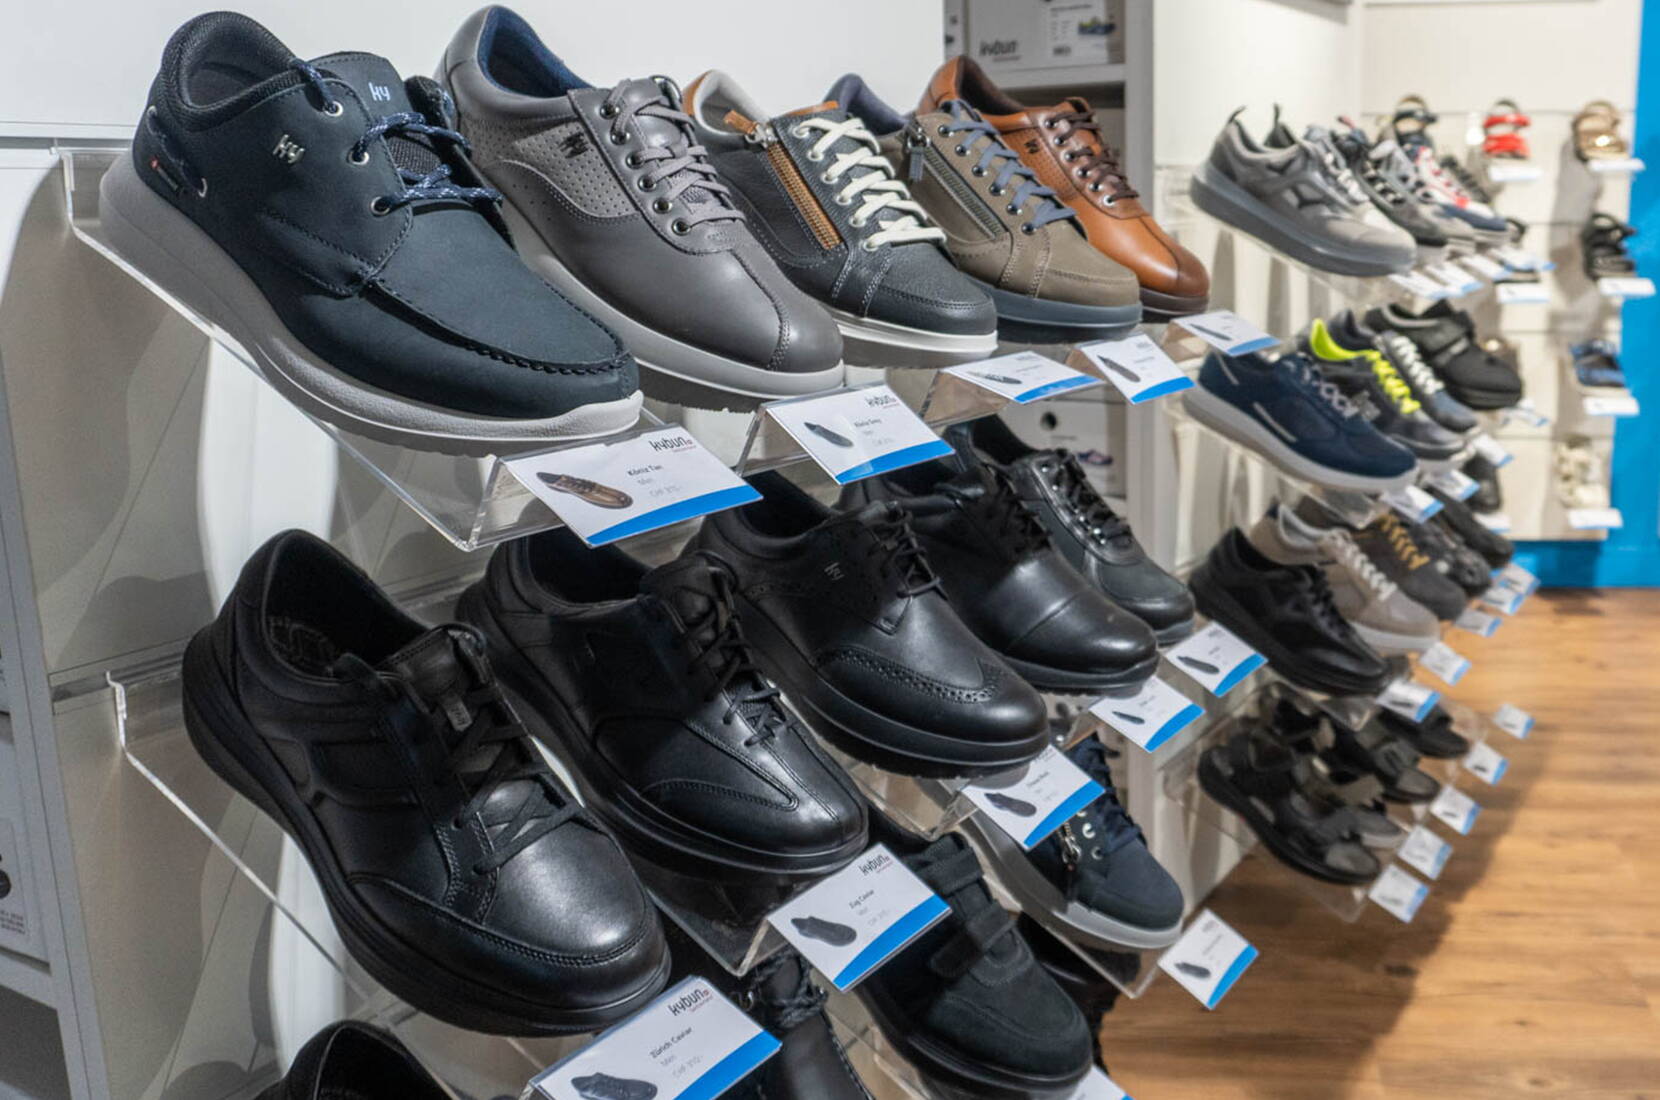 15% Rabatt auf Schuhe von kybun und Joya. Jetzt Gutscheincode herunterladen und profitieren. Qualität aus der Schweiz. Der Rabatt ist in den Filialen Thun und Winterthur sowie im Online-Shop einlösbar. 